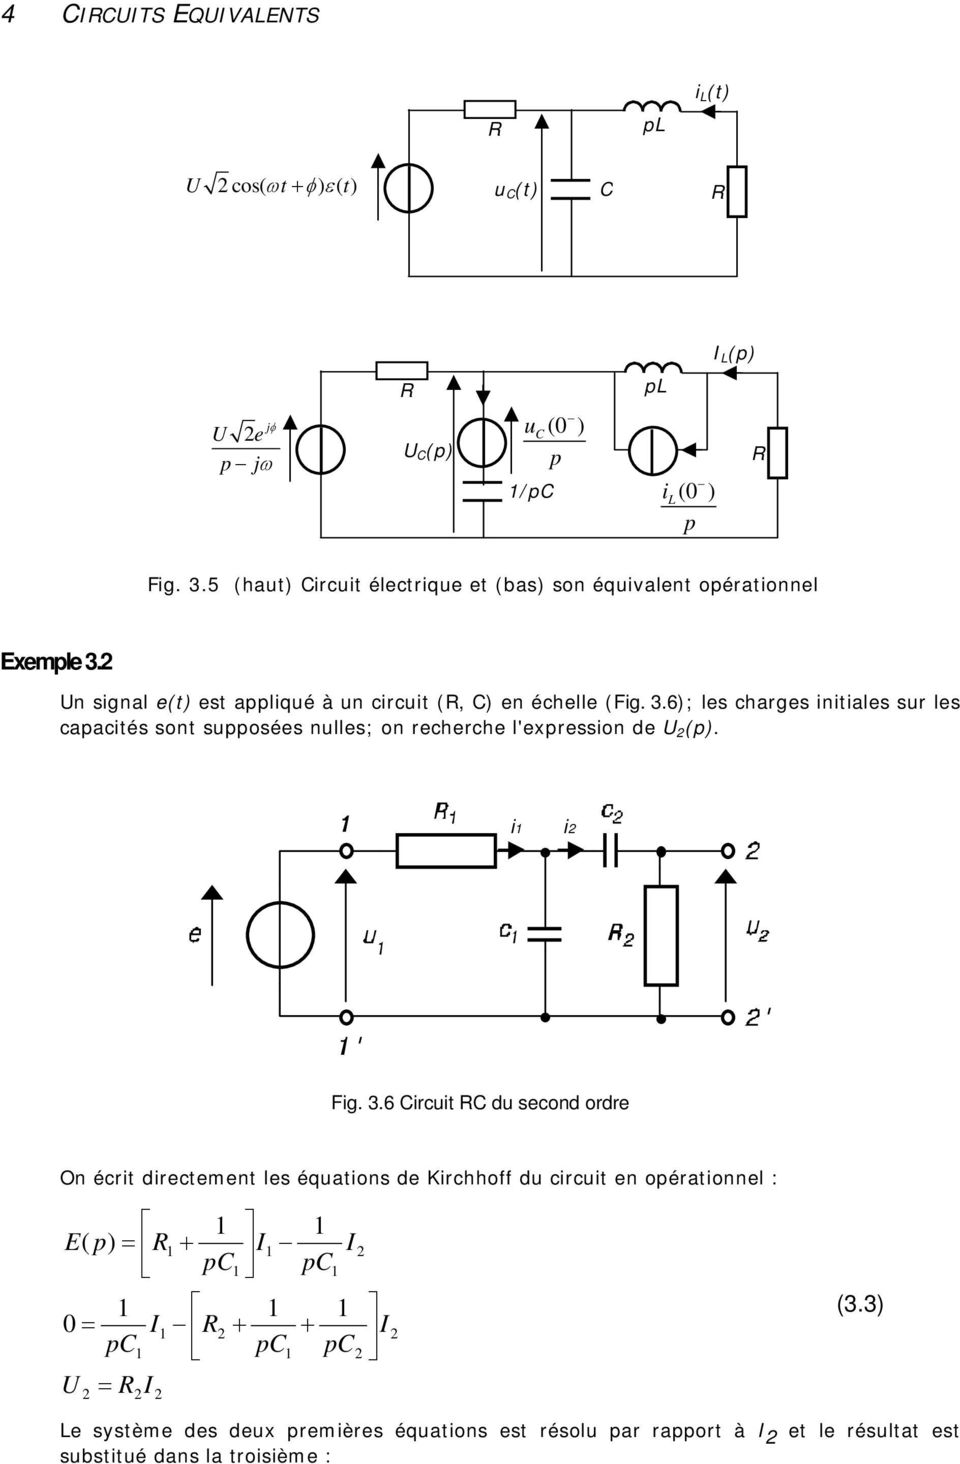 Un signal e(t) est appliqué à un circuit (, C) en échelle (Fig. 3.